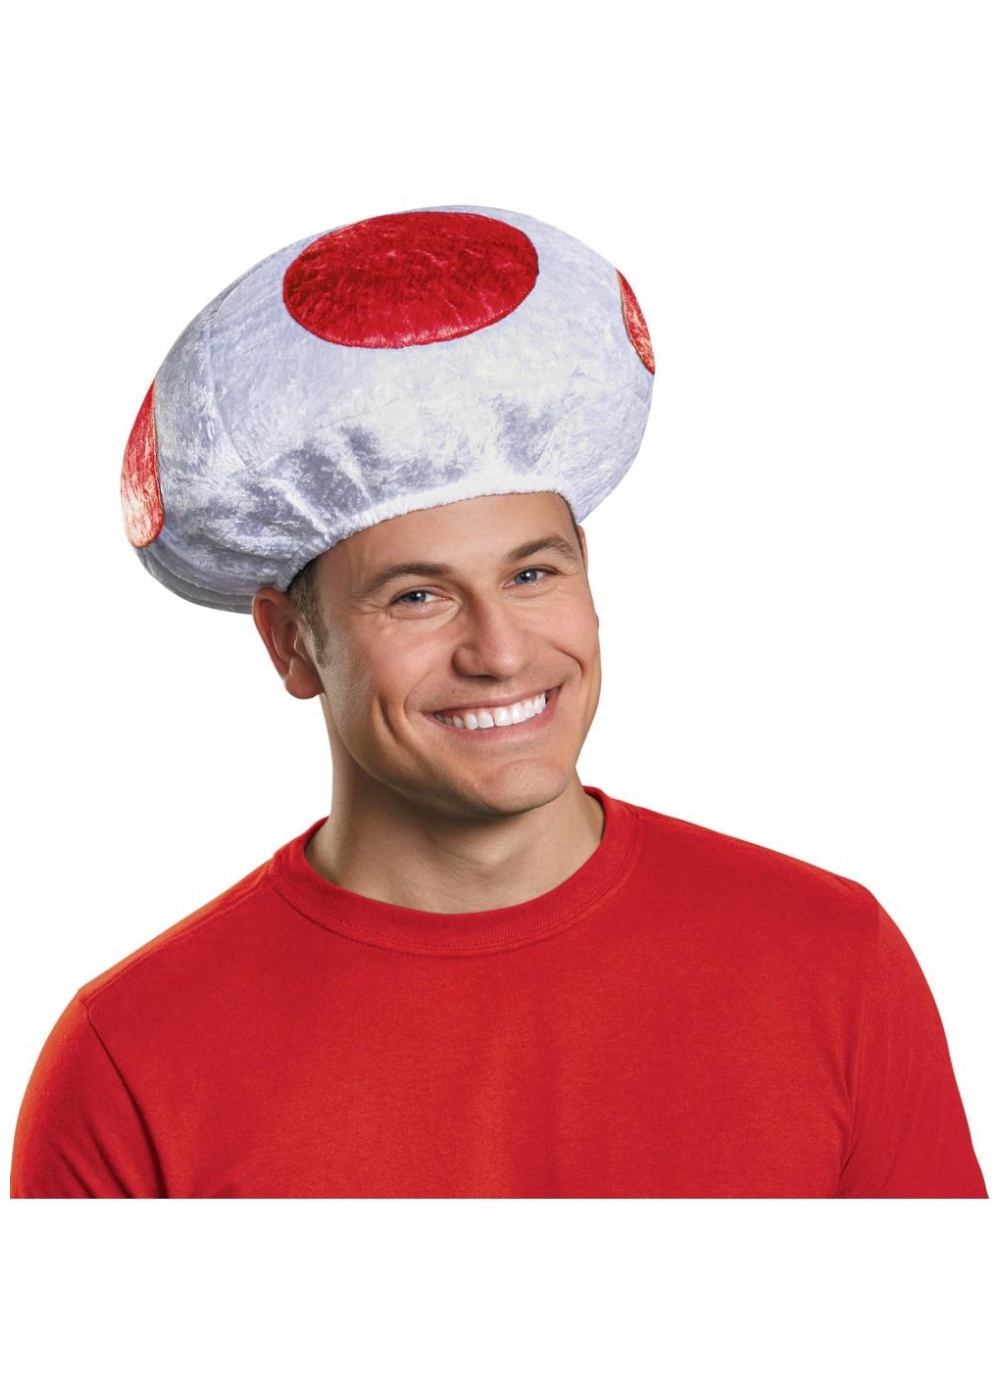 Super Mario Bros Red Mushroom Toad Hat